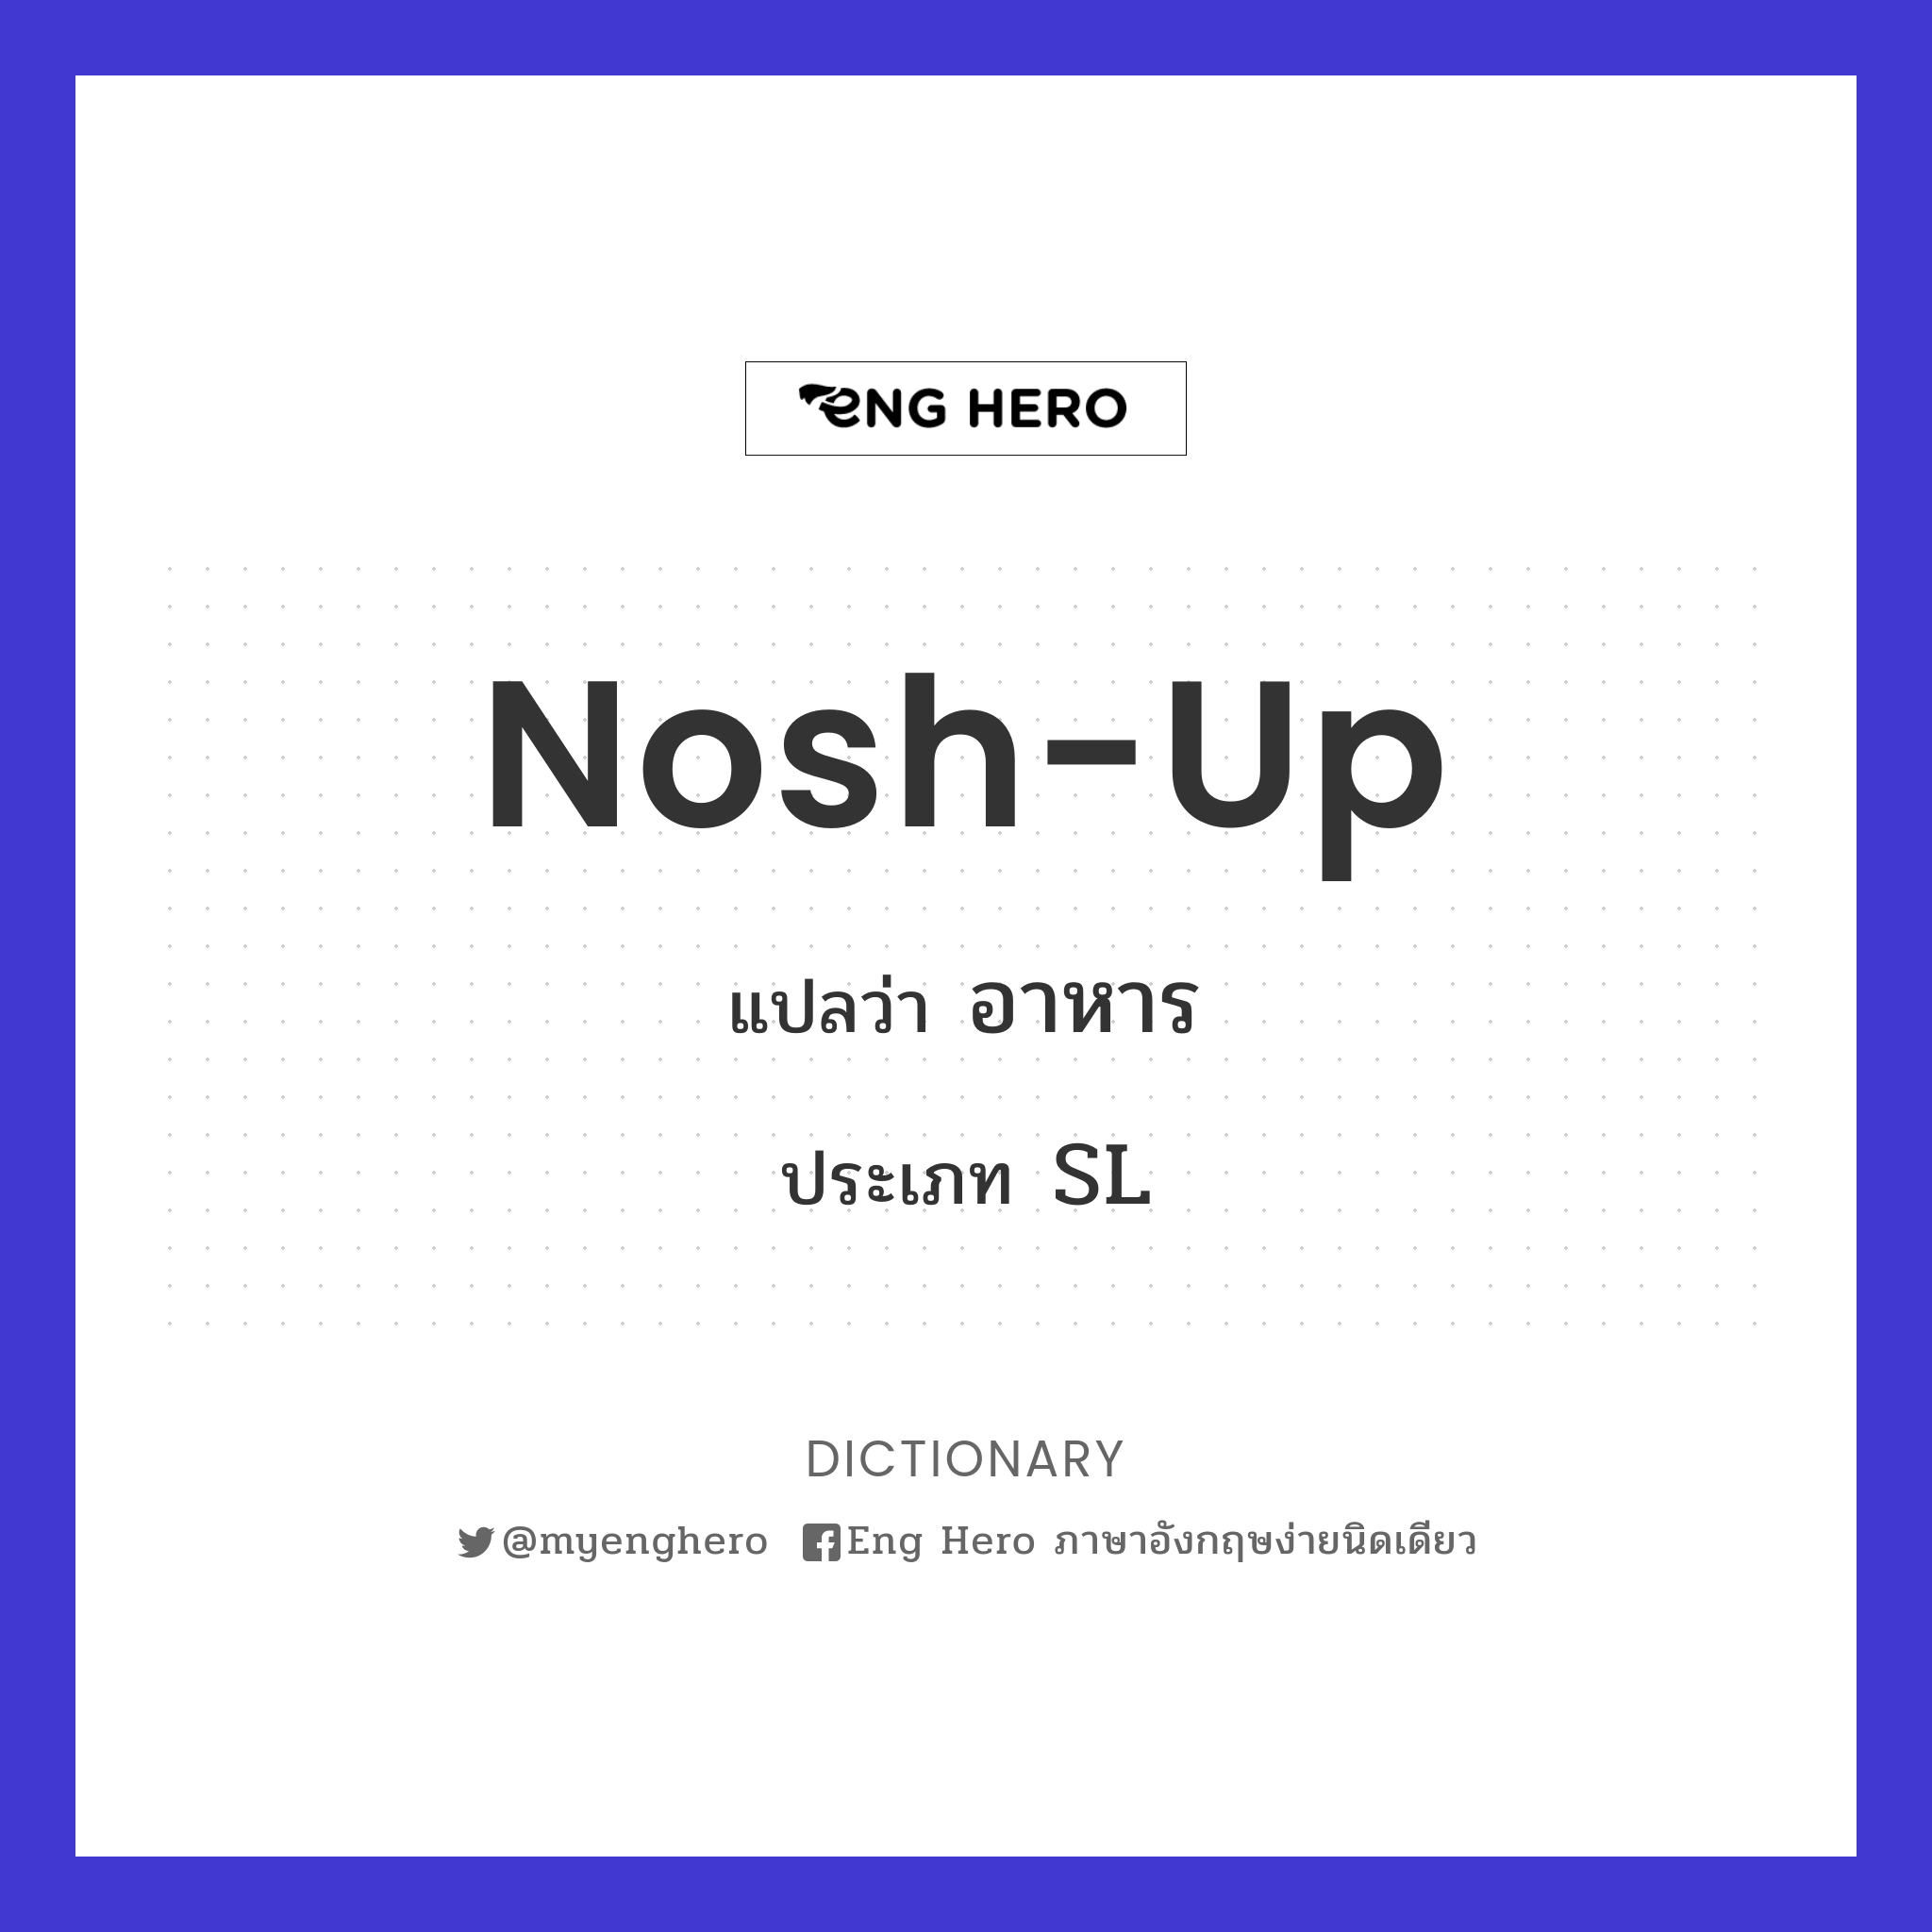 nosh-up